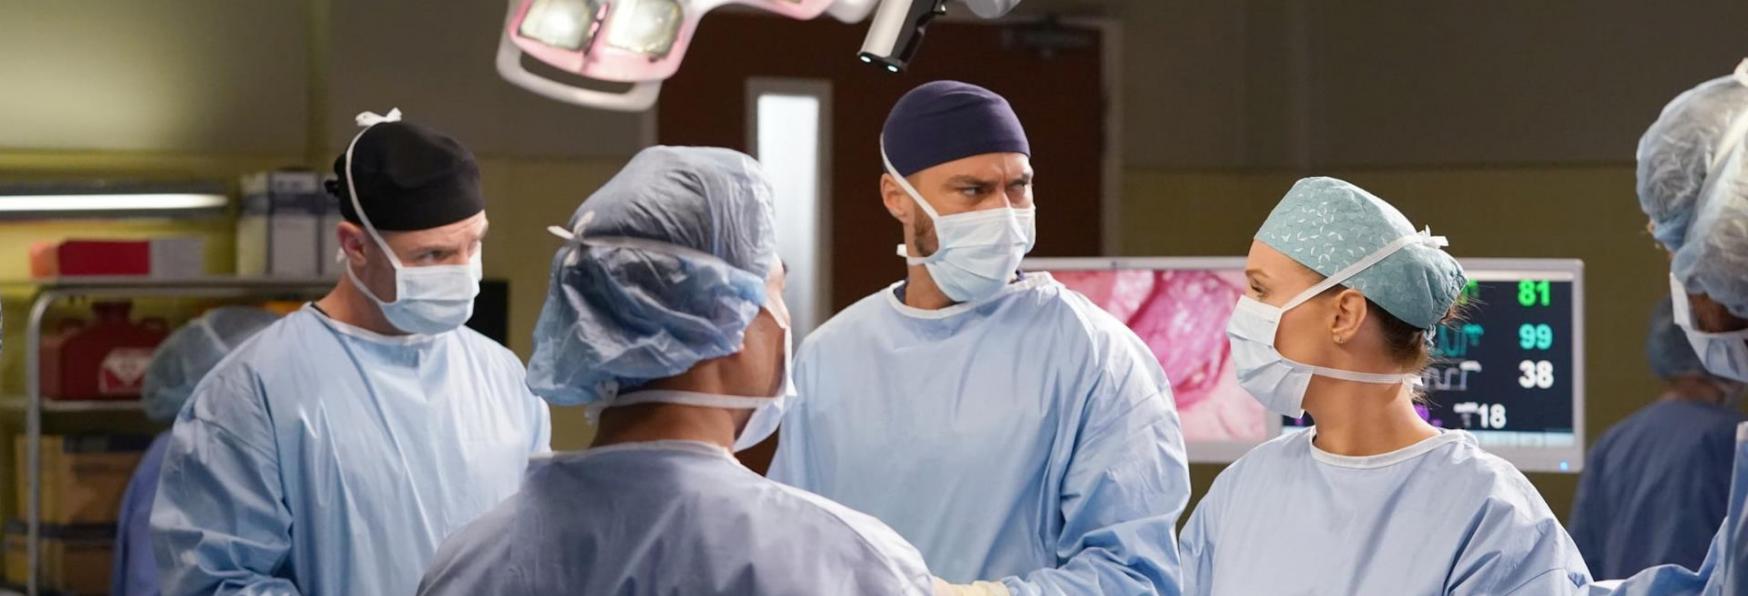 Grey’s Anatomy 18: un Importante membro del Cast Lascerà la Serie TV nel Prossimo Episodio